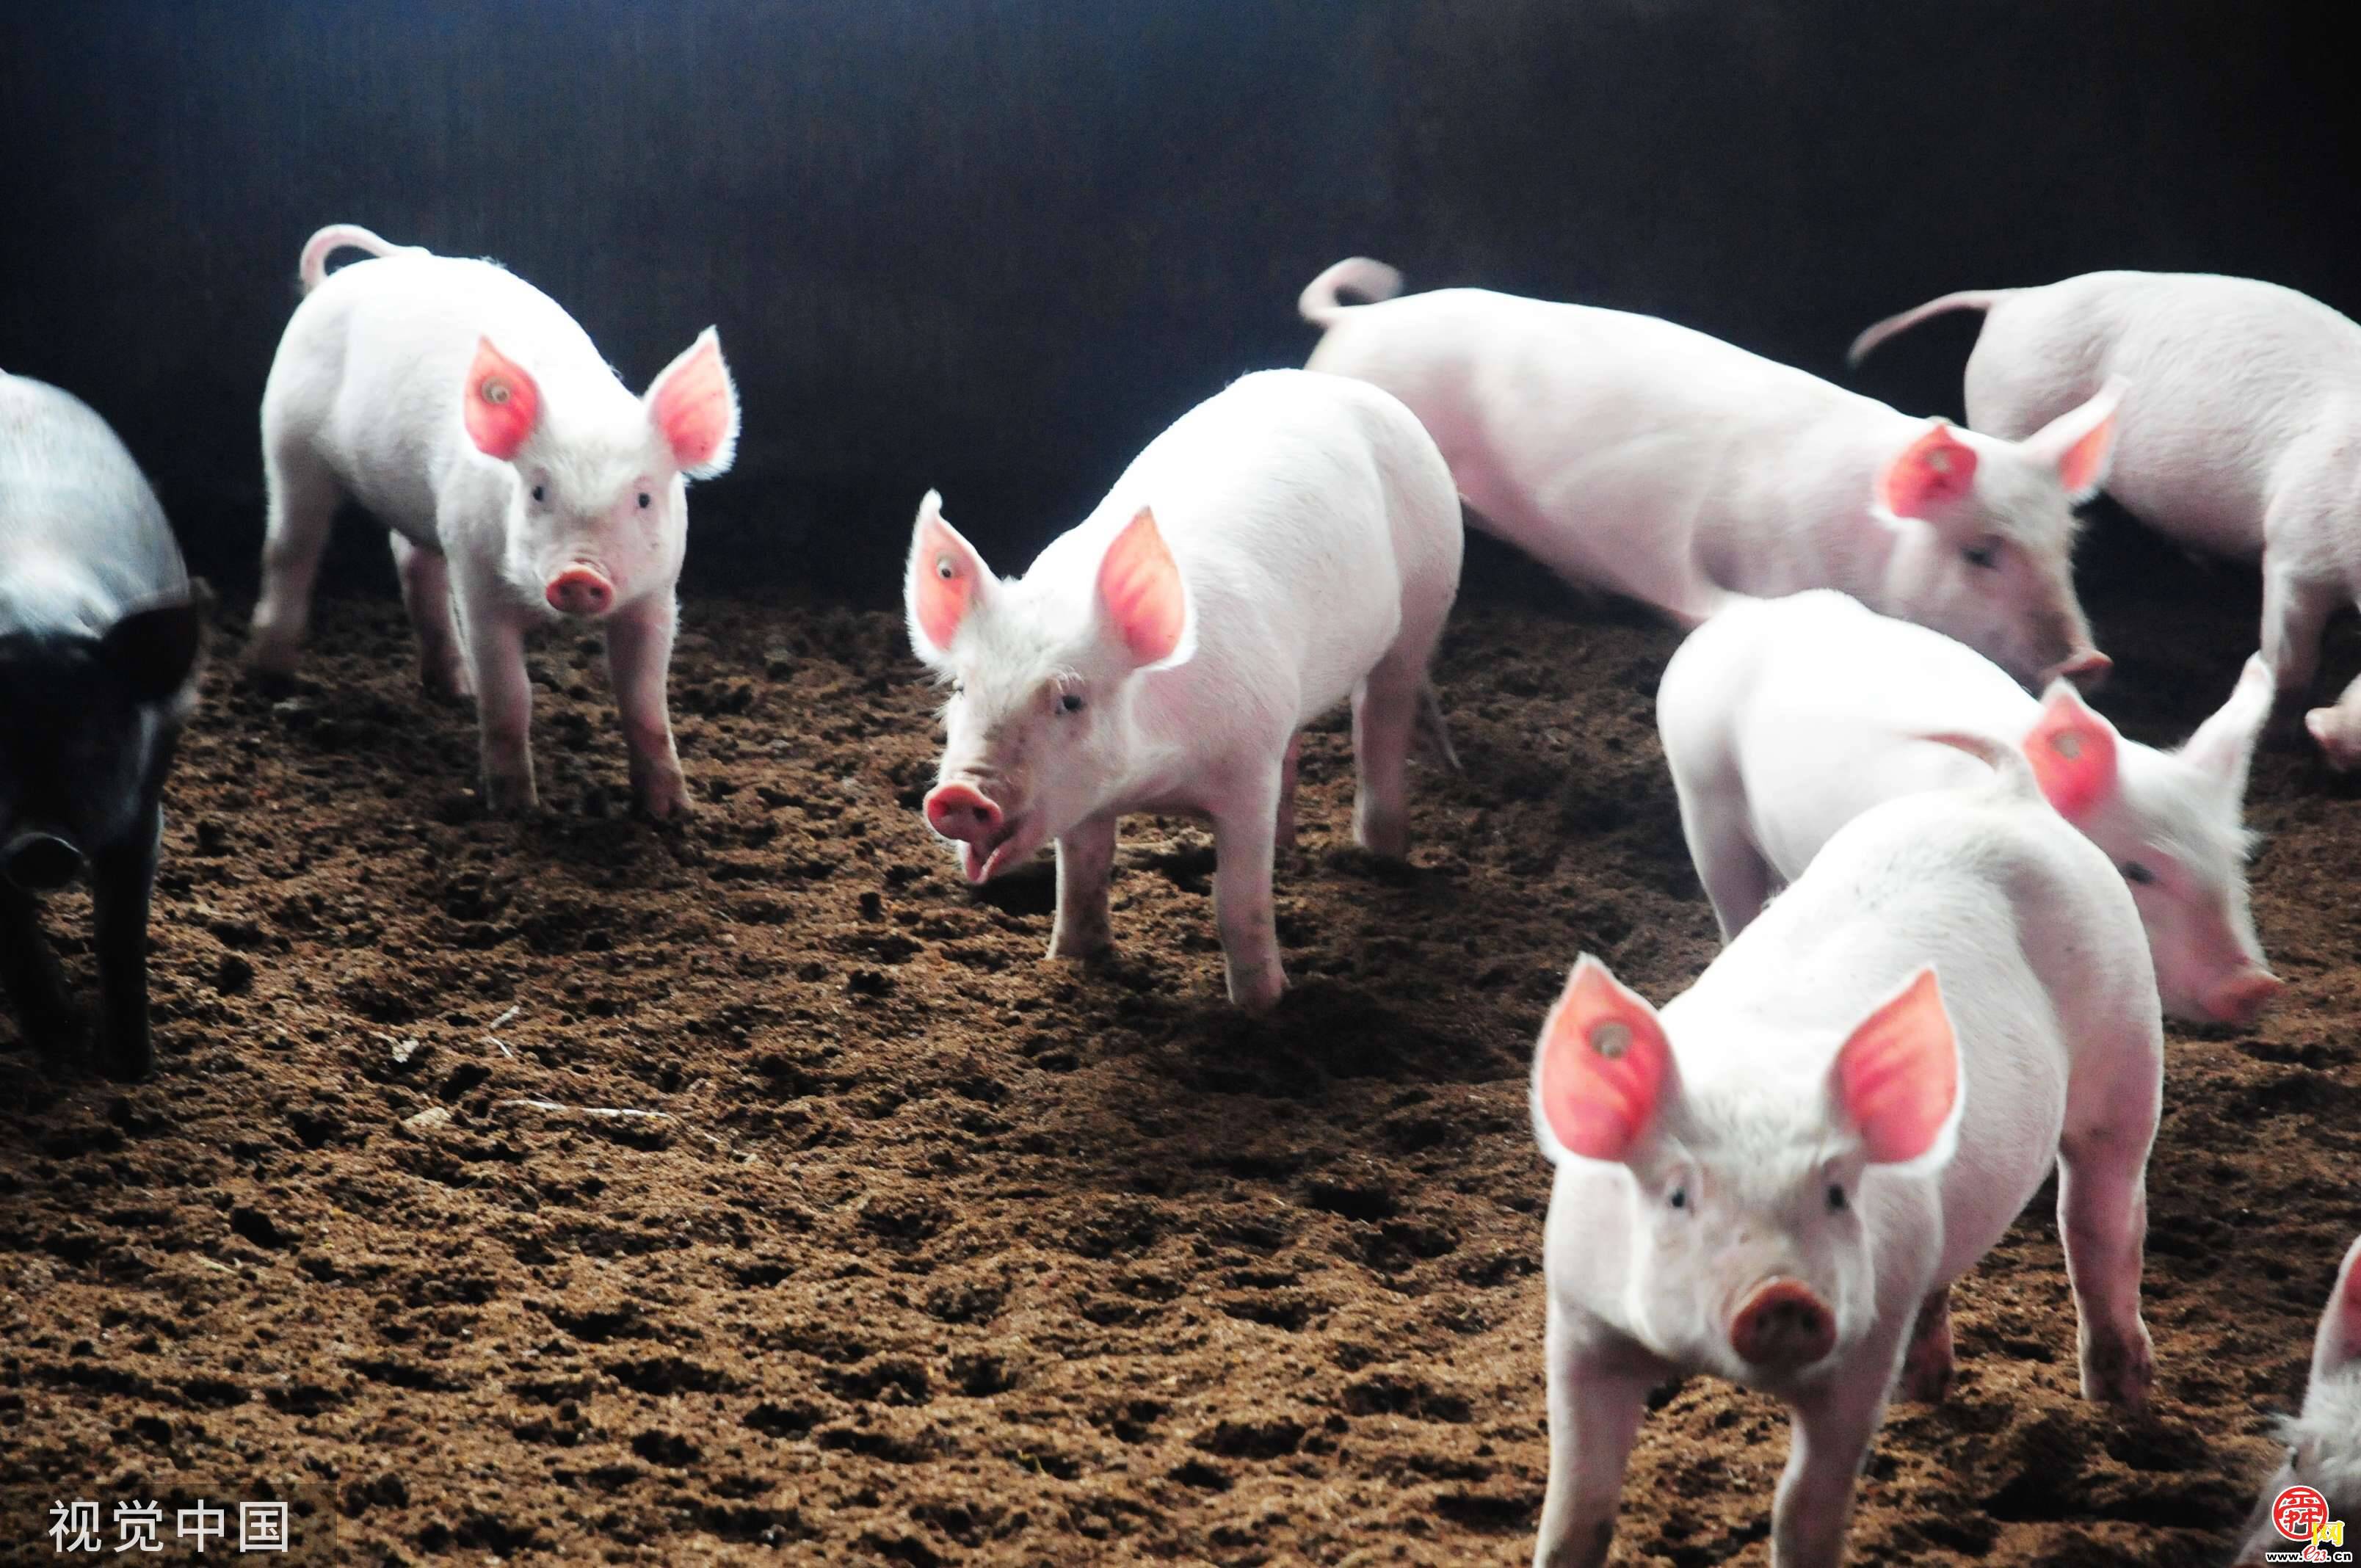 济南在全省率先试点开展“生猪目标价格保险” 每头猪投保21元，半年后最高可获赔1750元